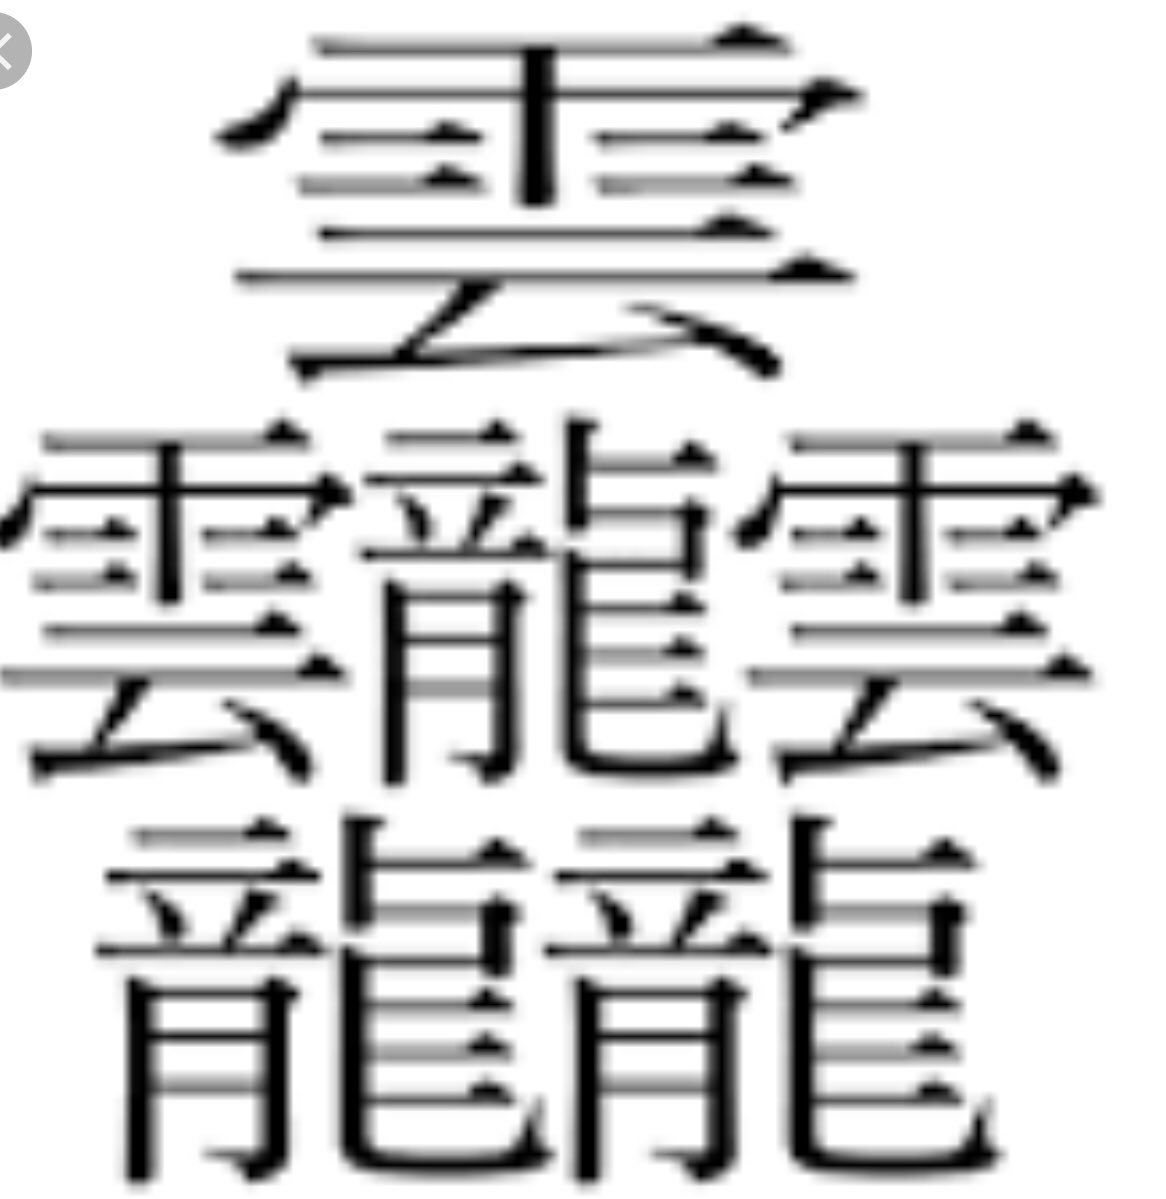 Kiyohiko Shinoyama 漢字びゃん 知見ではもっとも画数が多いのは雲3つと龍3つを合わせた たいと 人名に使われた例がある しかし何百年も死語